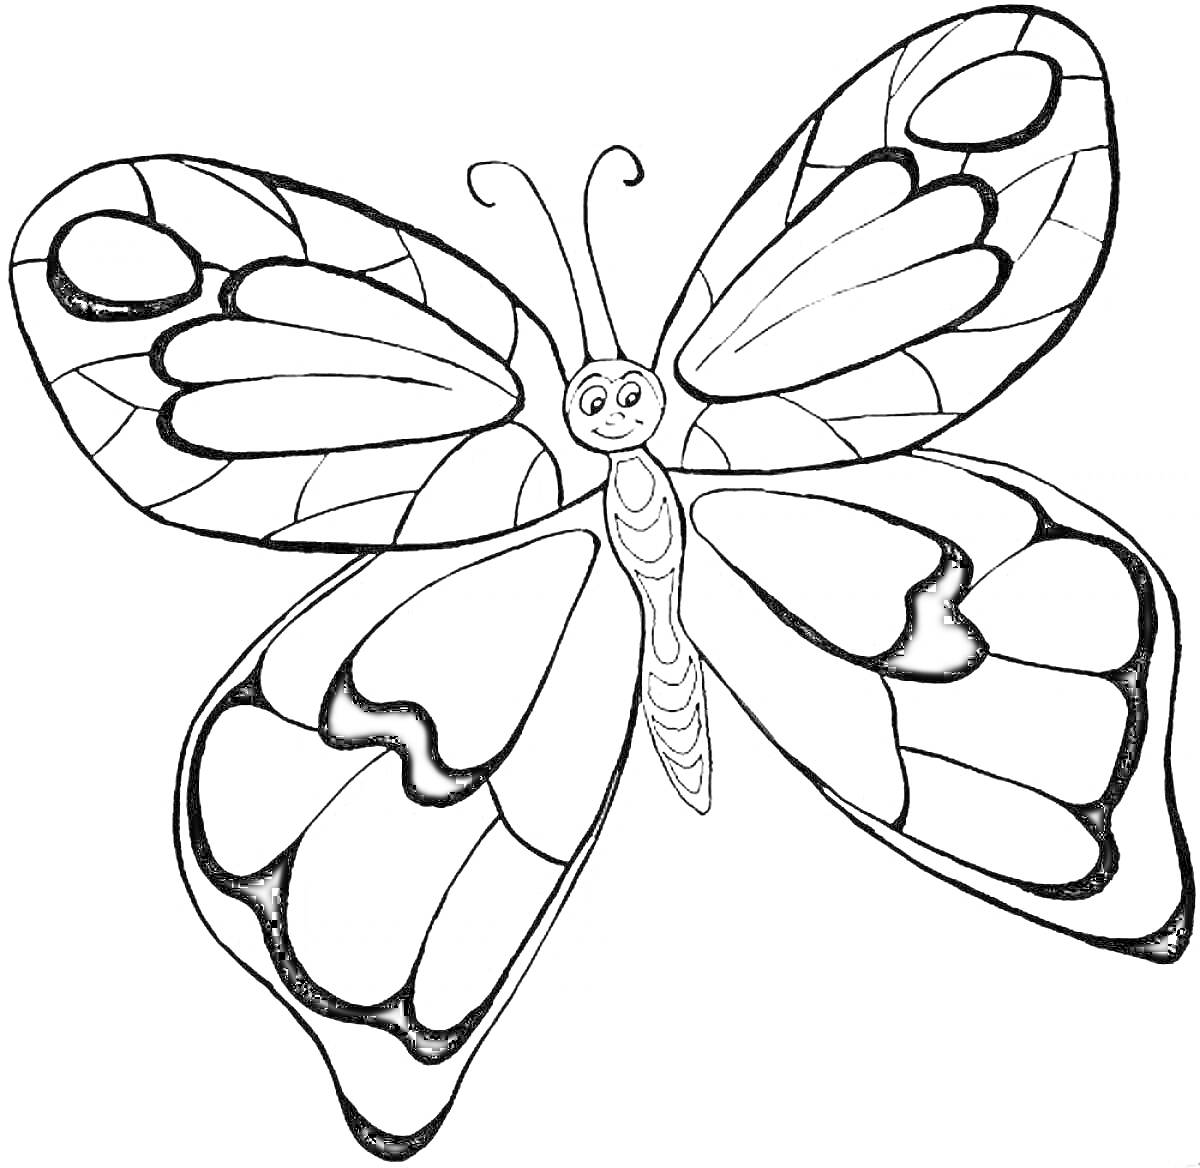 Раскраска бабочка с узорчатыми крыльями для раскрашивания